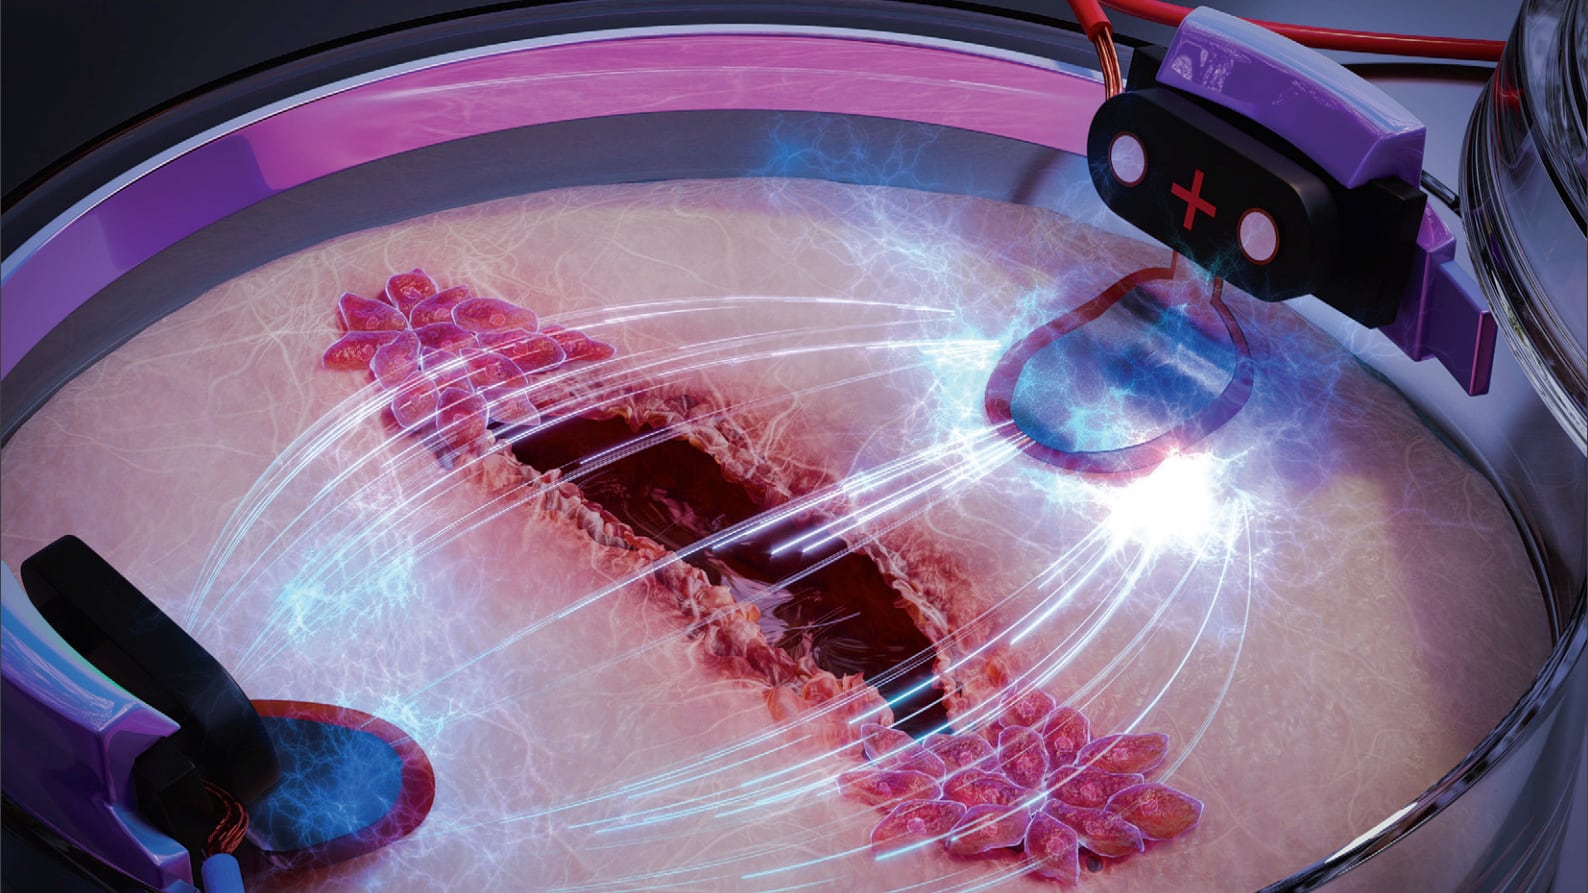 El campo eléctrico obliga a las células a moverse siempre en la misma dirección, asumiendo el control del sistema de navegación celular.